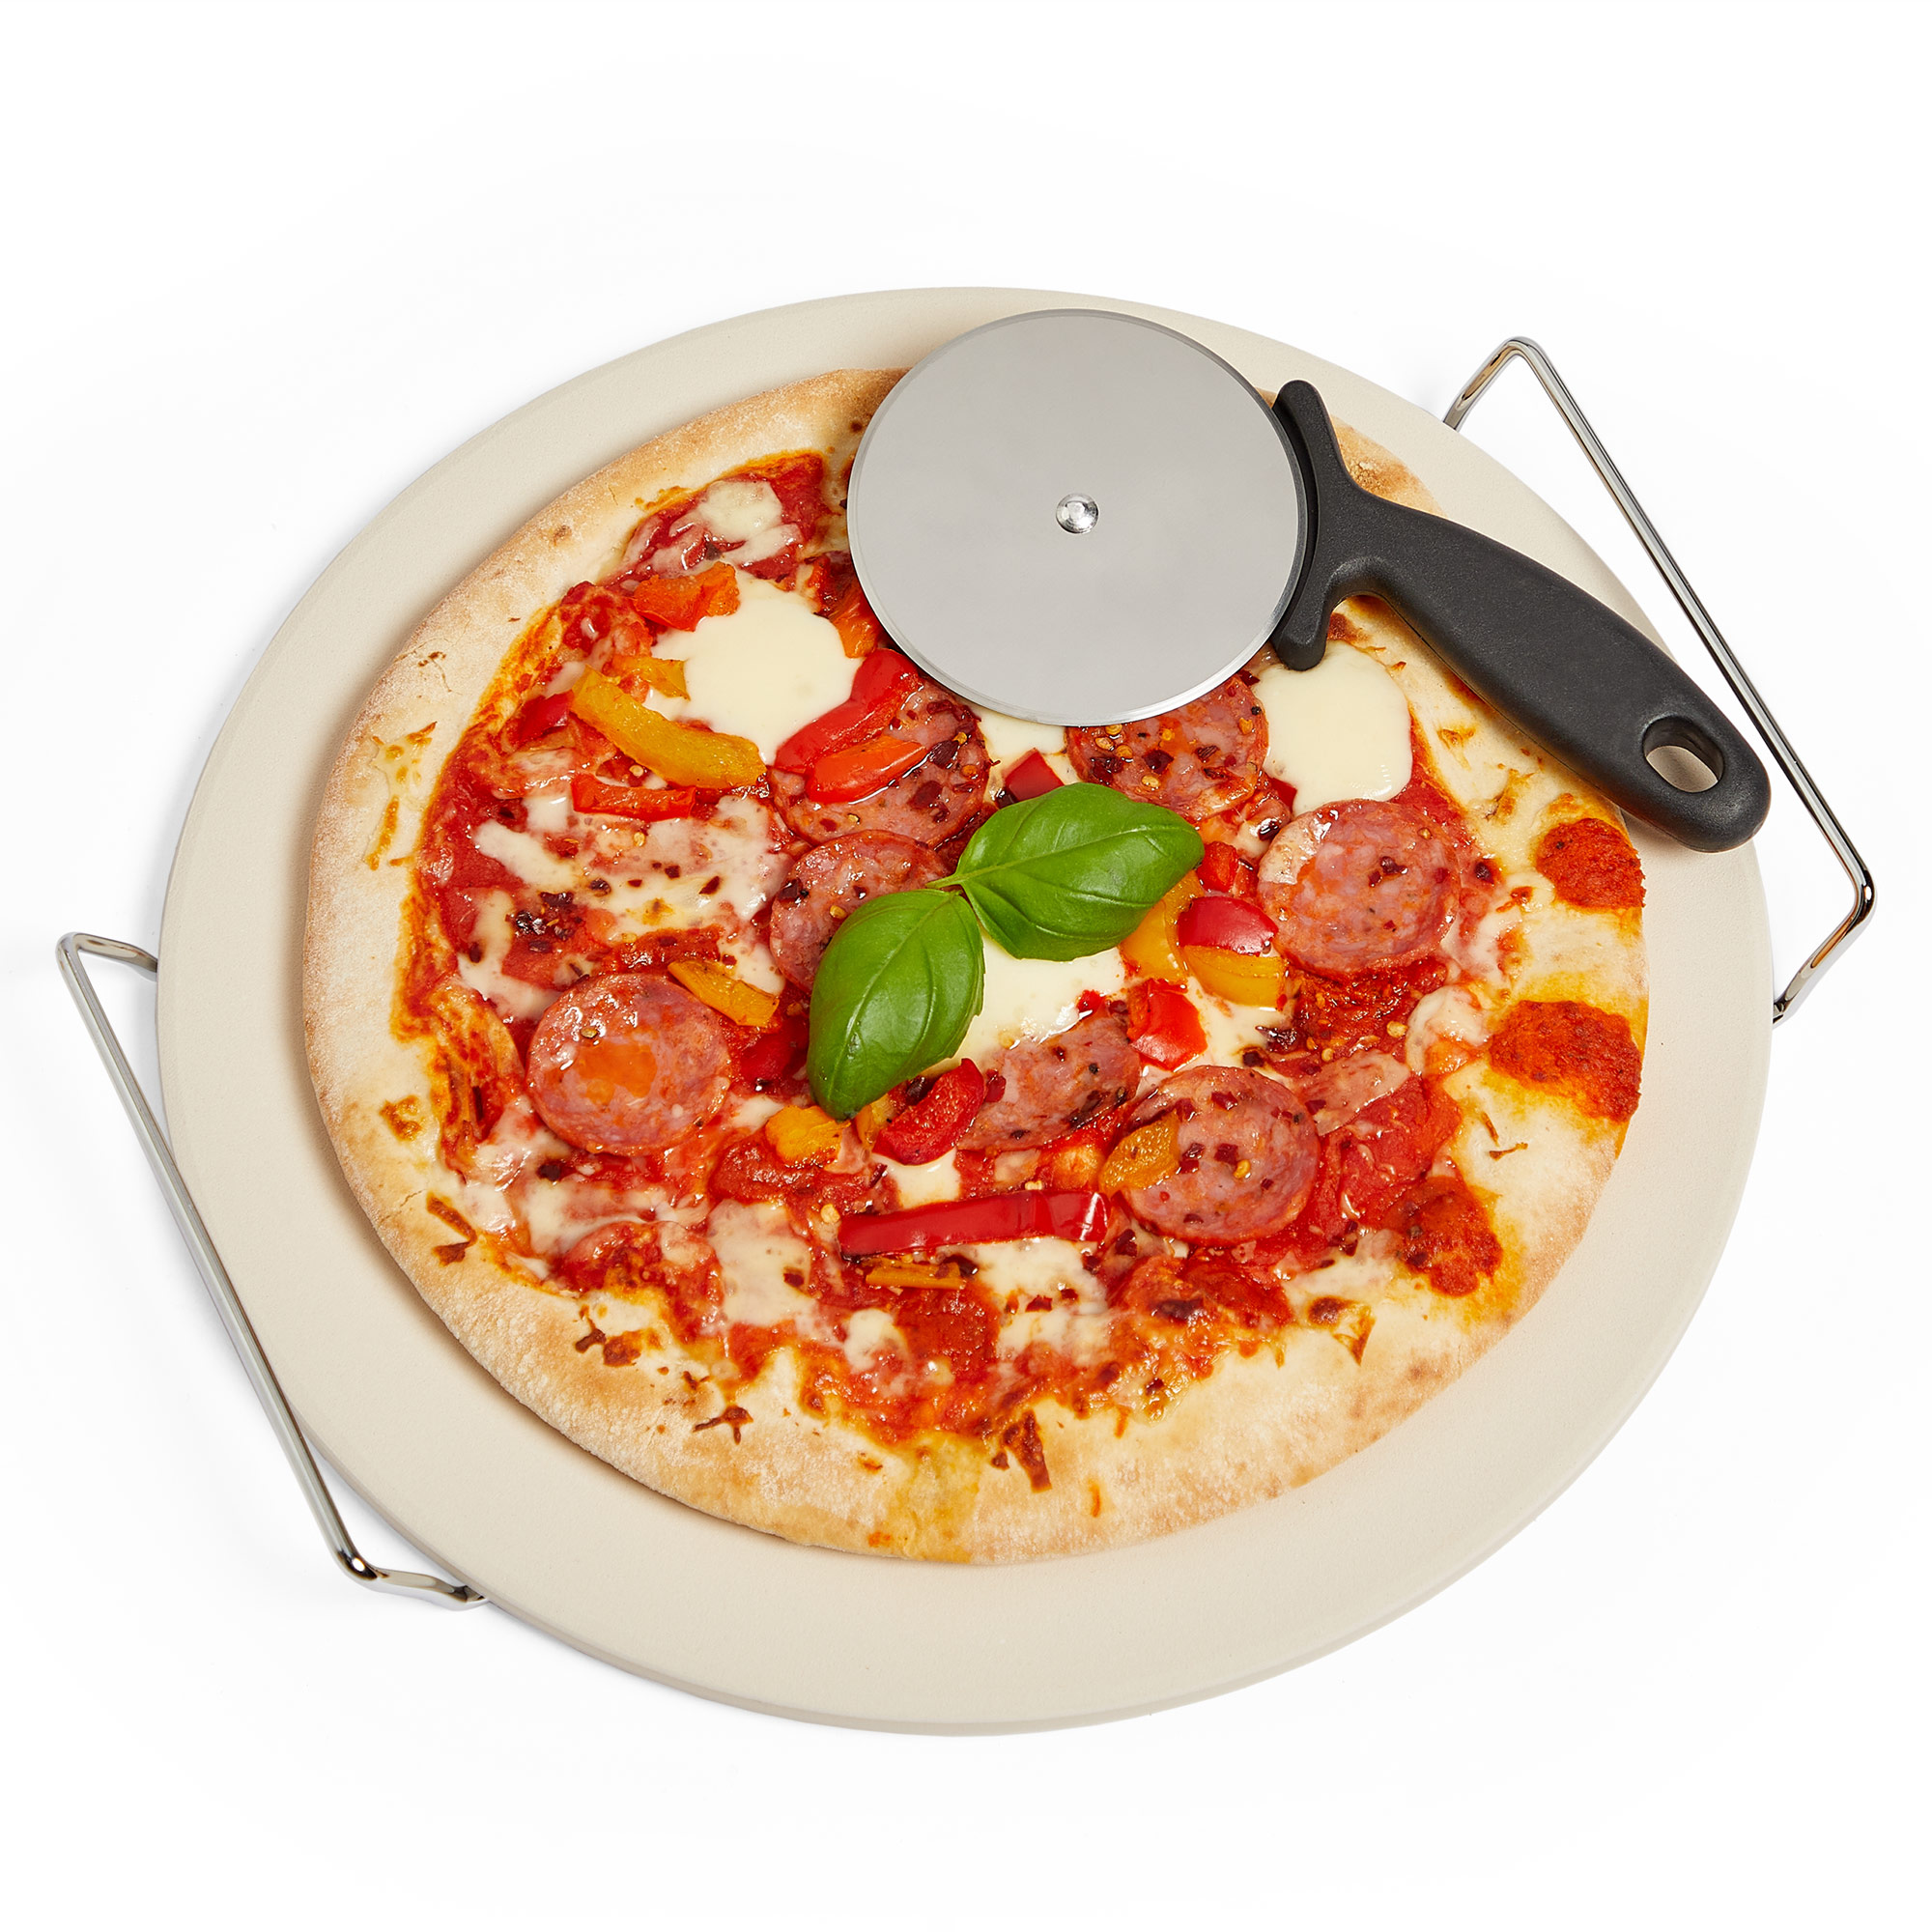 VonShef Ceramic Pizza Baking Stone Set Chrome Stand 33cm + FREE Pizza Cutter